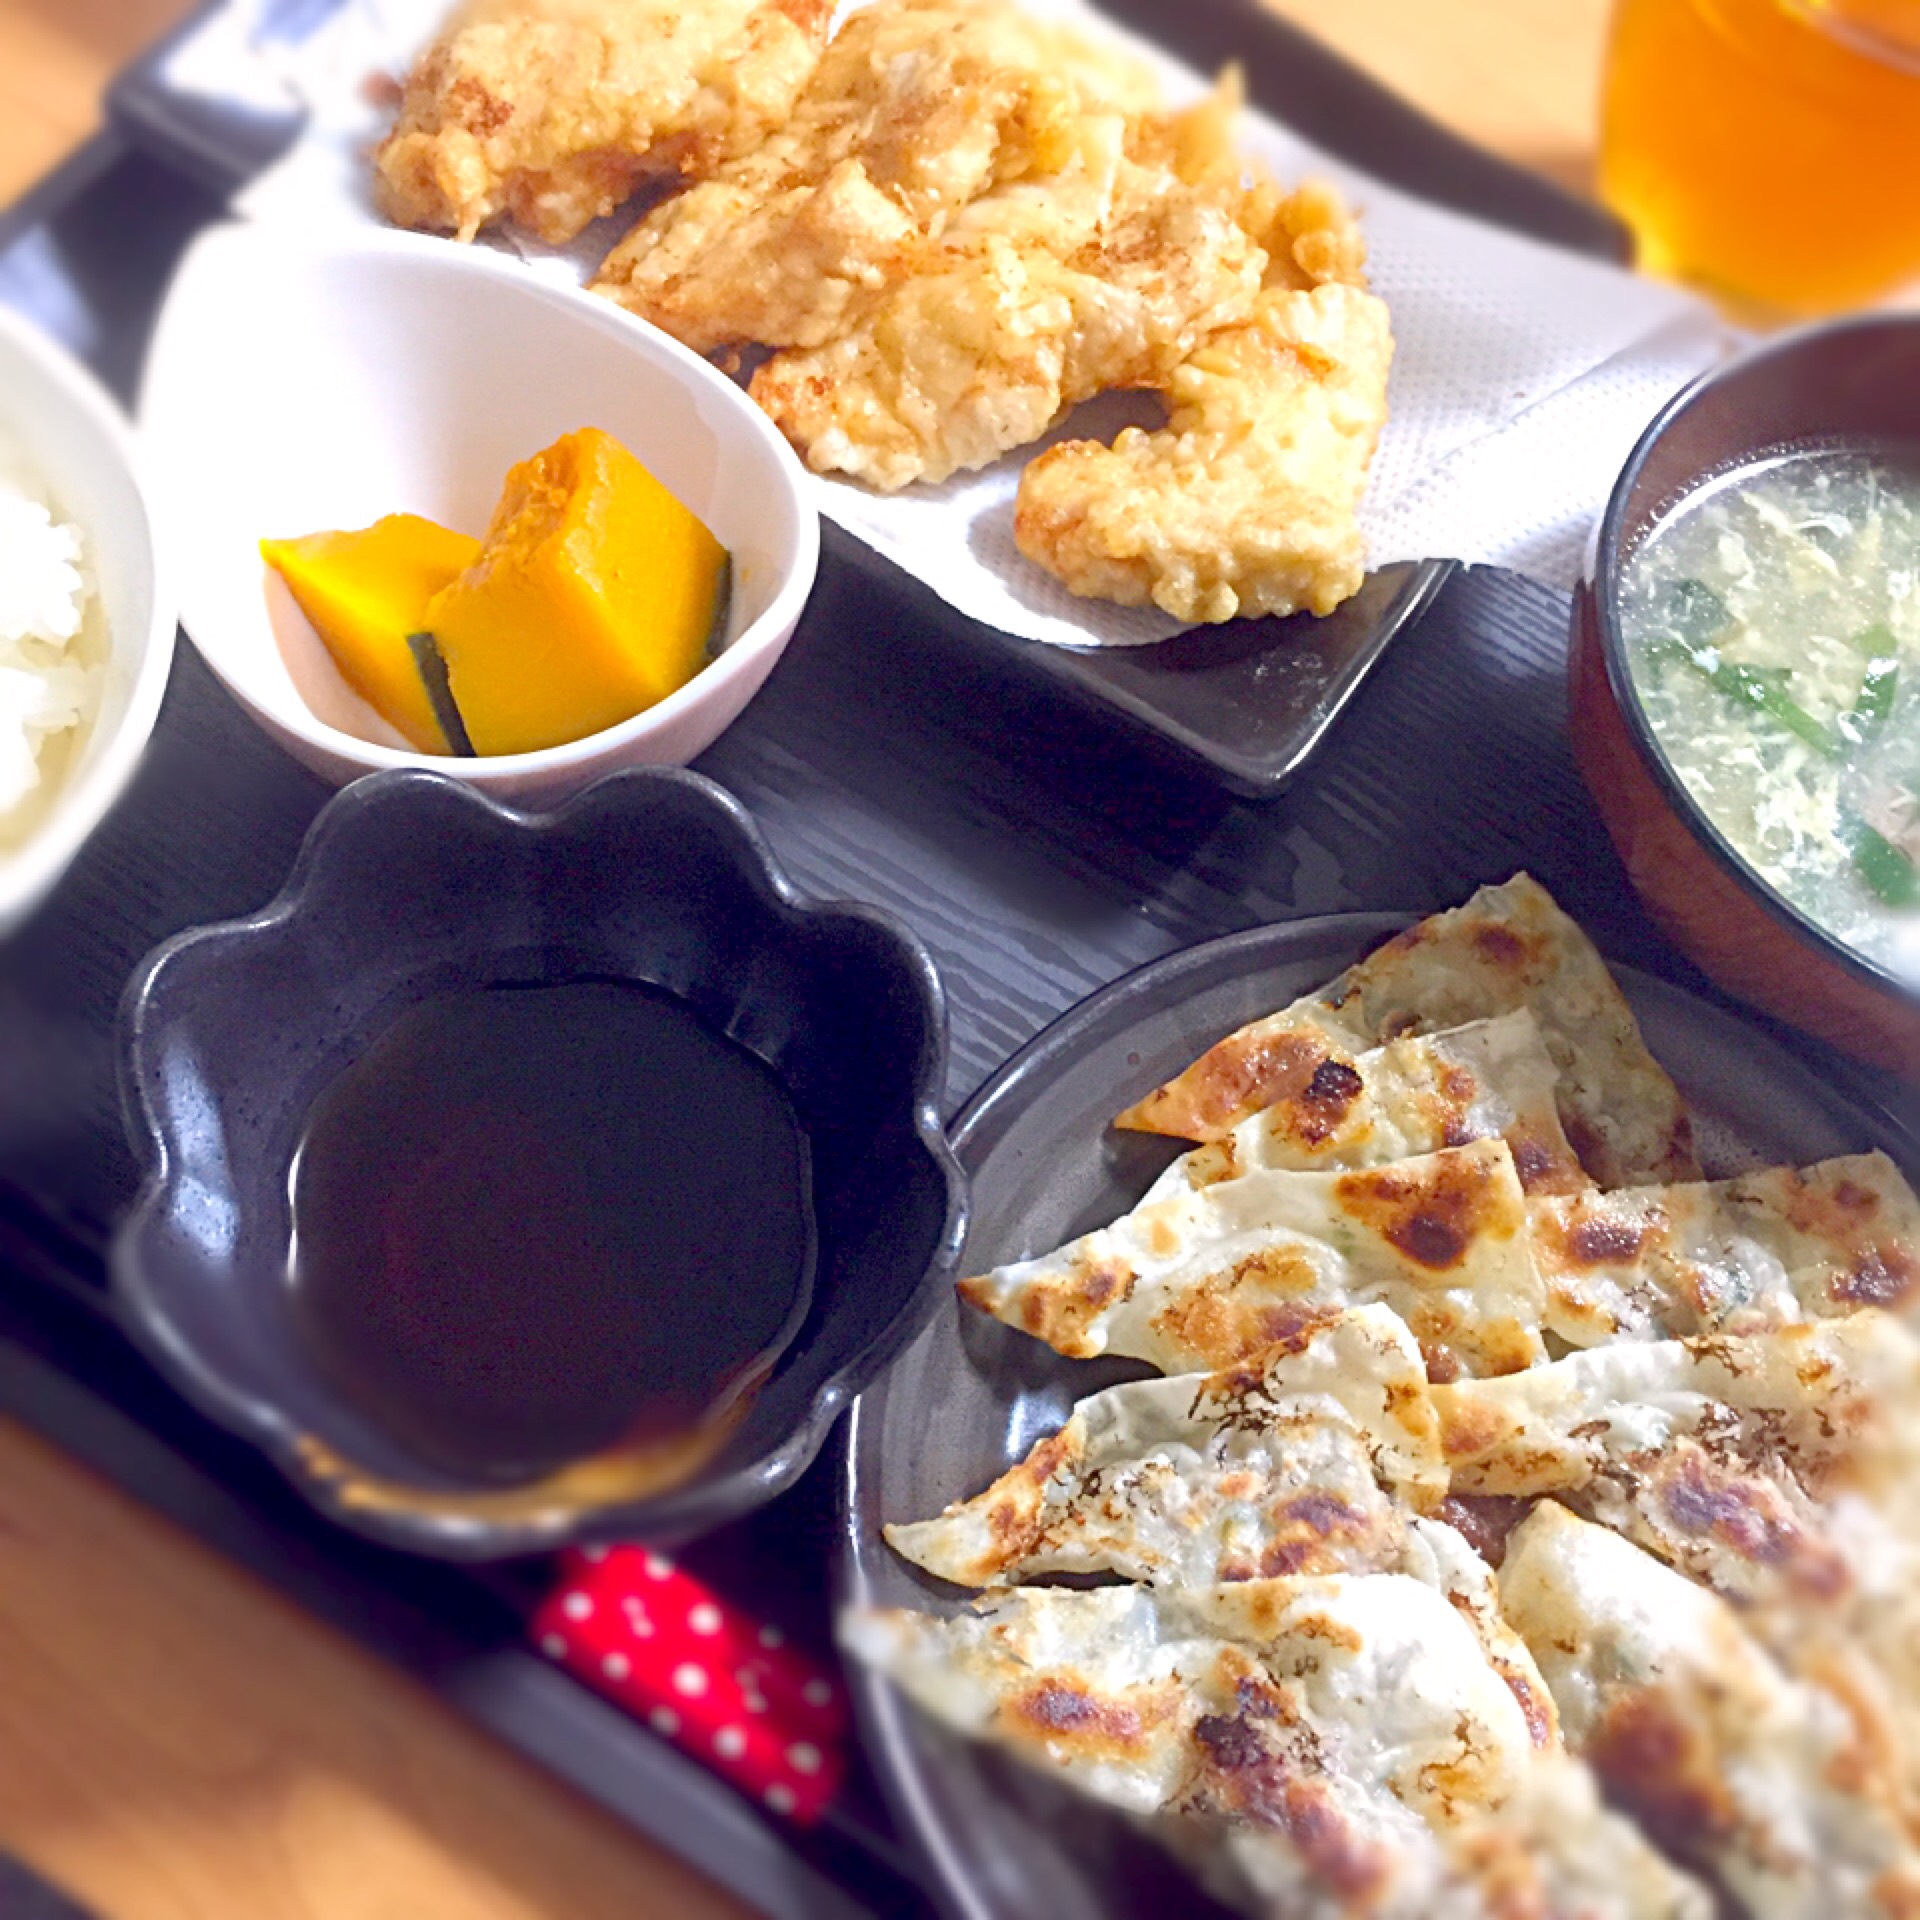 ✱とり天
✱三角餃子
✱ニラ玉スープ
✱かぼちゃの煮物